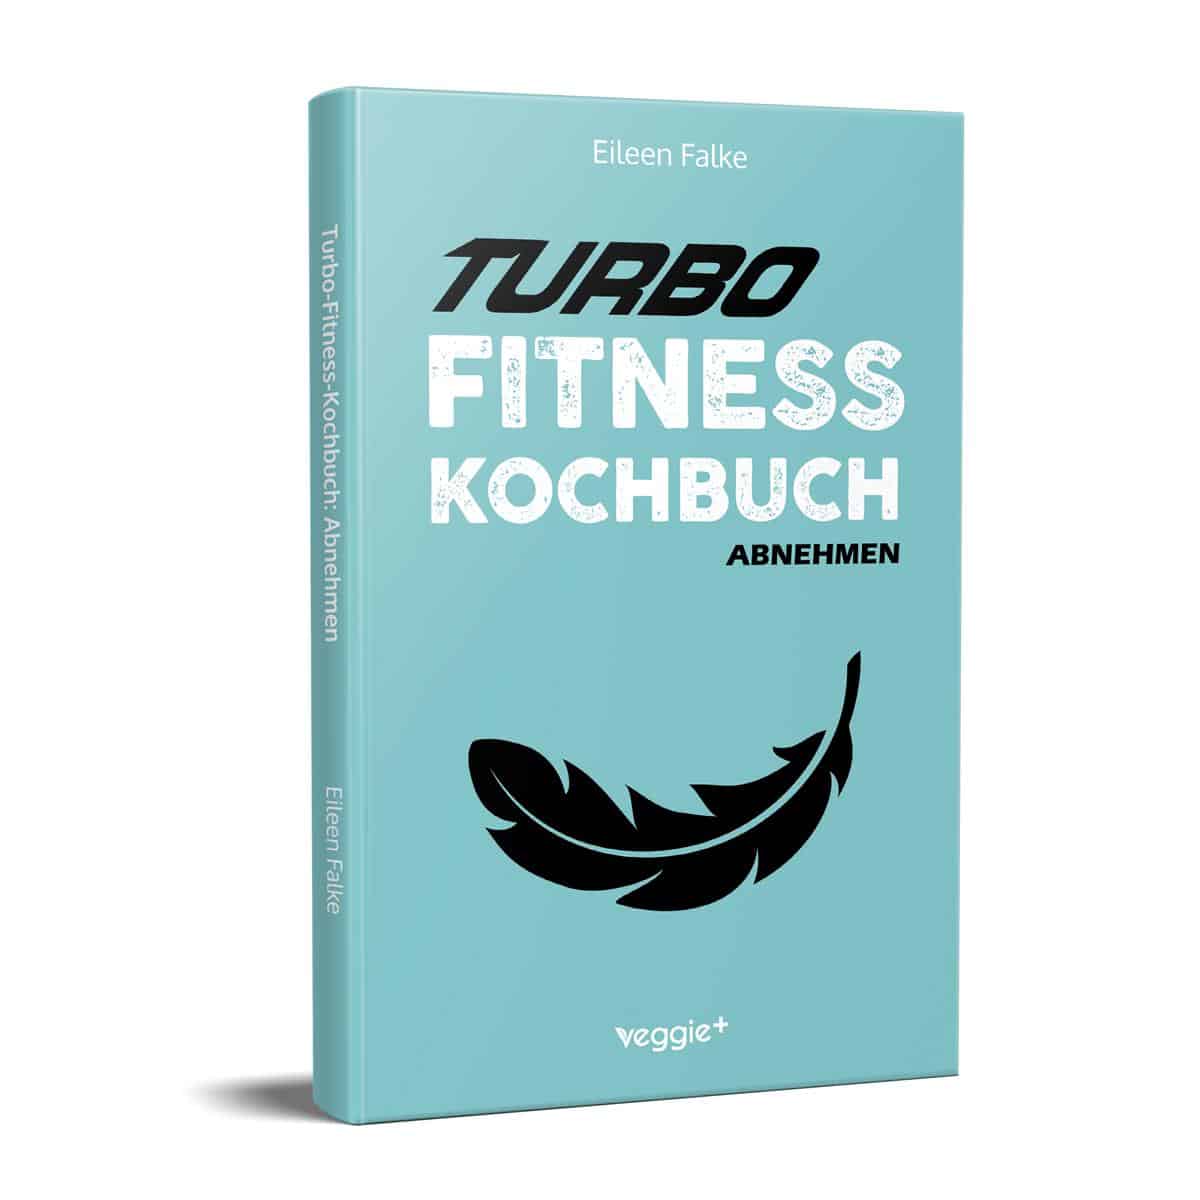 Neuerscheinung im veggie + Verlag Turbo Fitness Kochbuch (abnehmen): 100 schnelle Fitness-Rezepte für eine gesunde Ernährung und einen effizienten Fettabbau (inkl. Nährwertangaben, Ernährungsplan und Bonusrezepte) von Eileen Falke